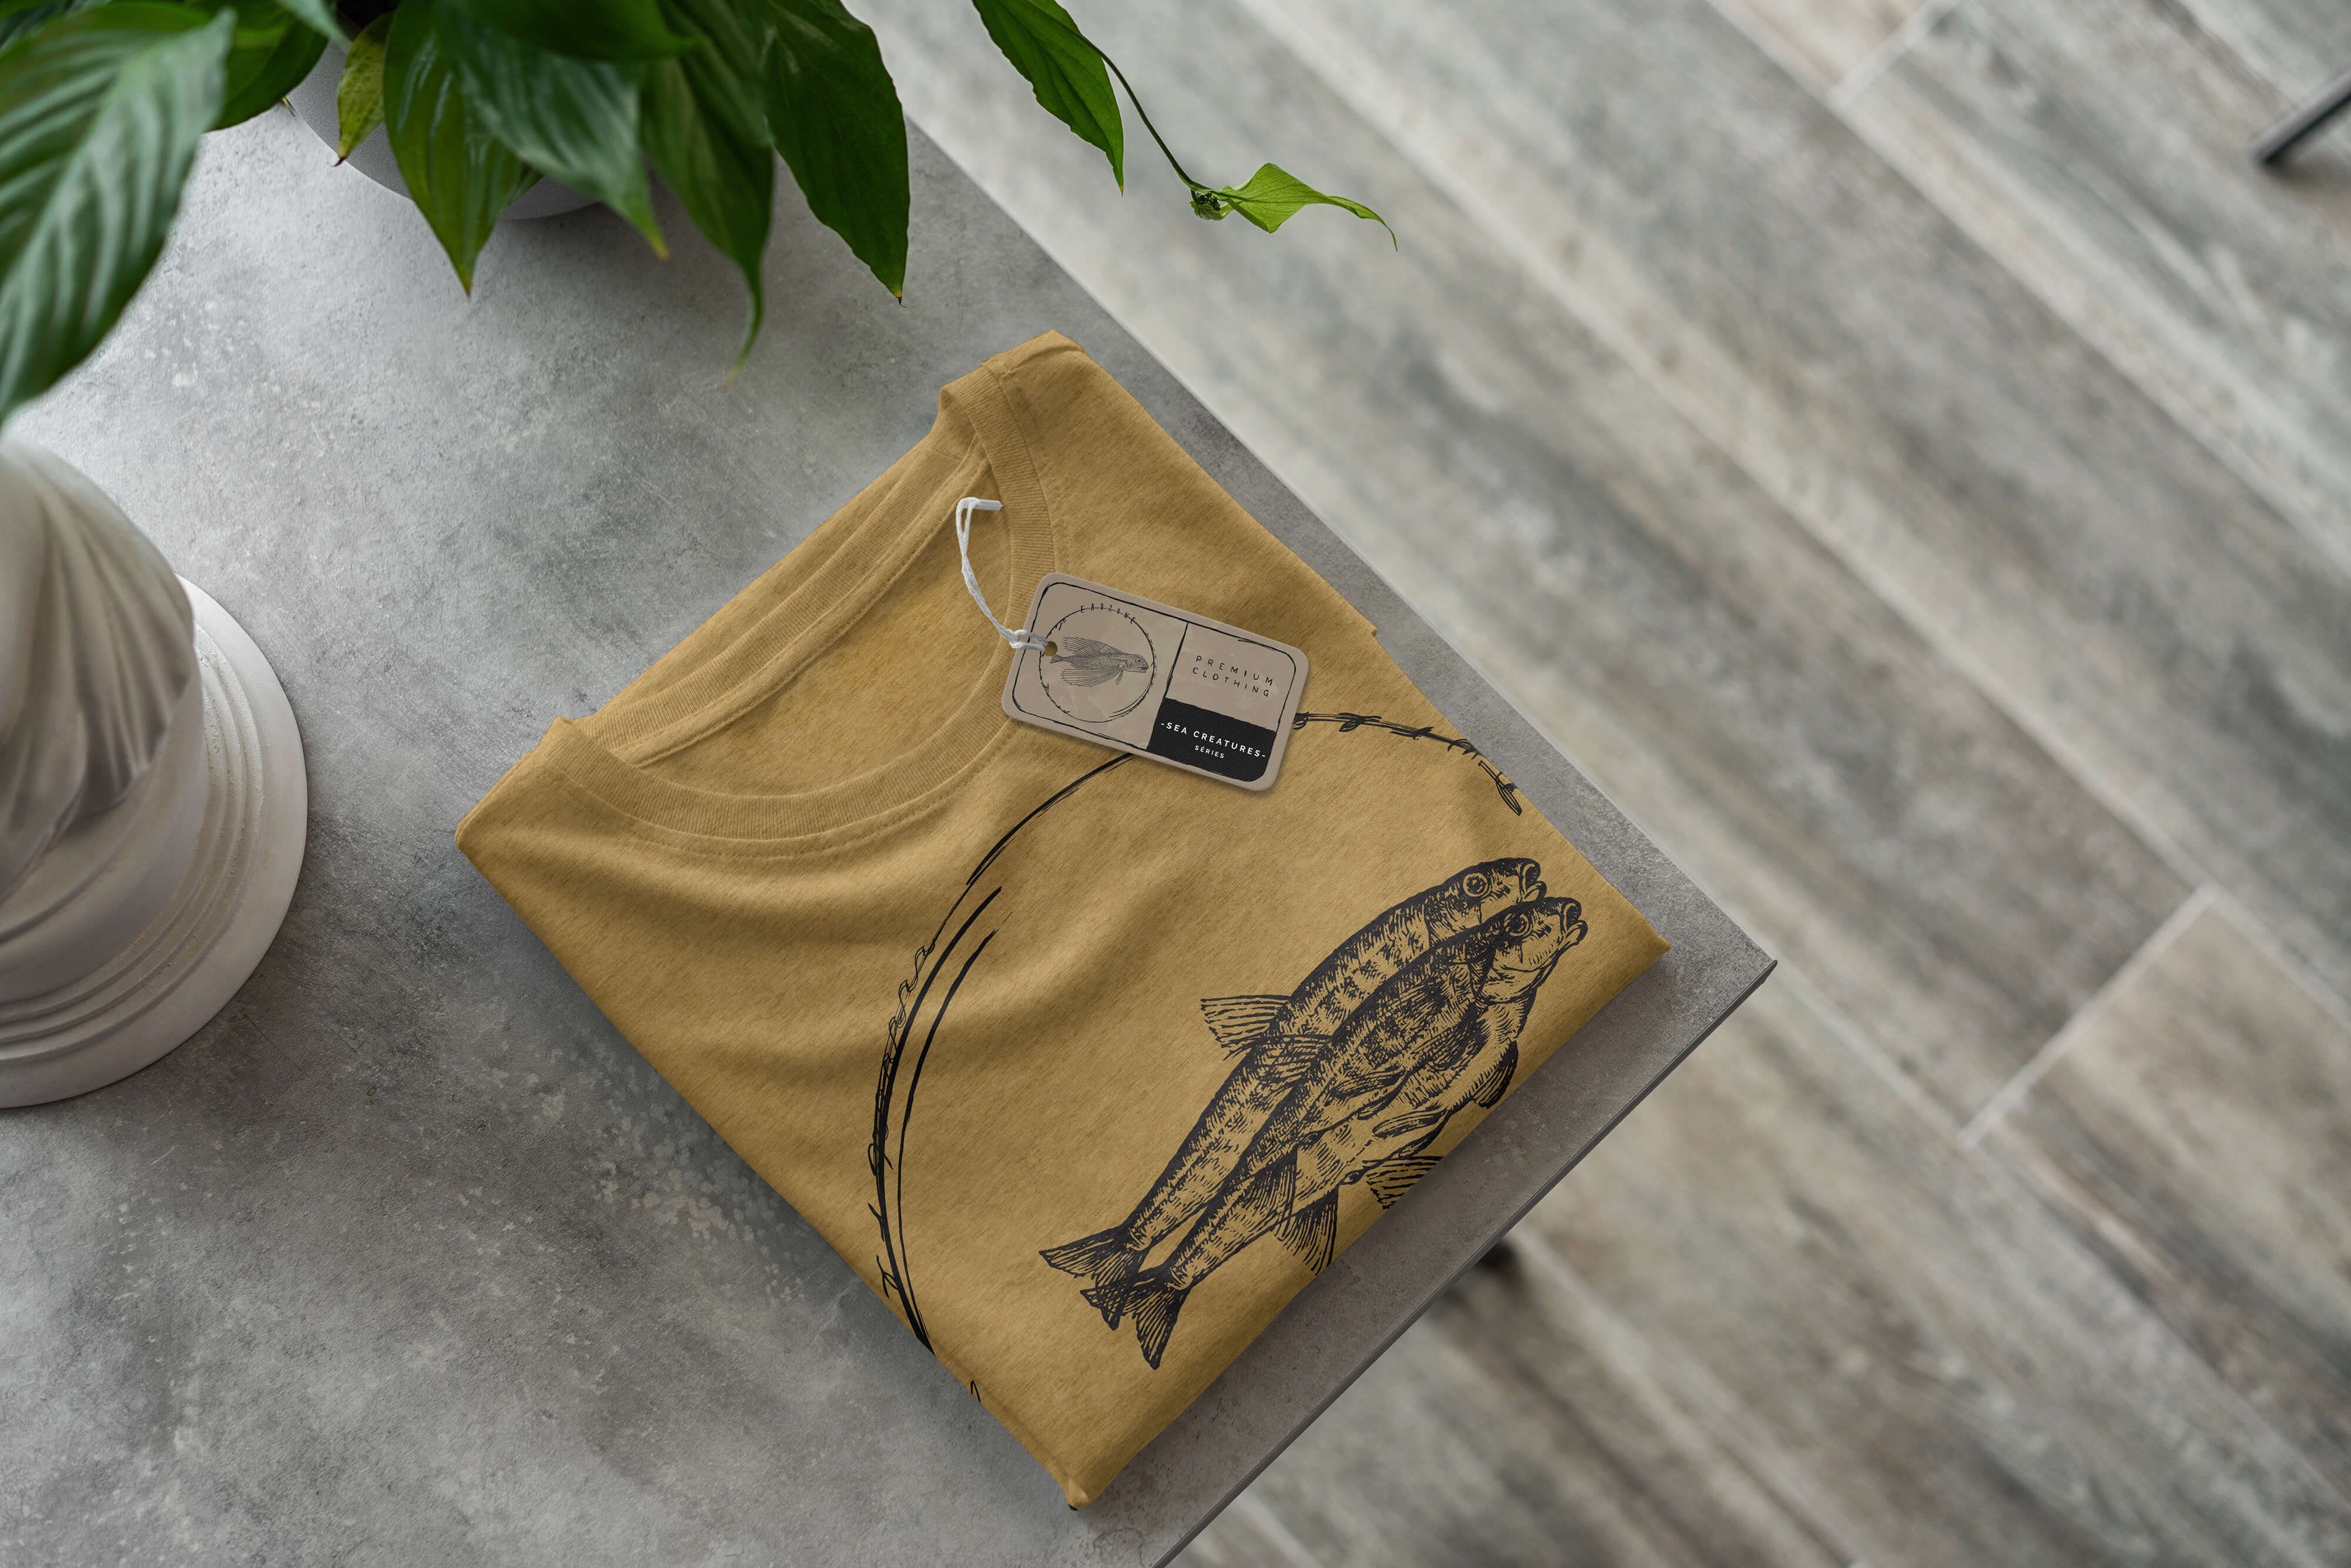 Sinus Art T-Shirt T-Shirt Creatures, / 059 Tiefsee Schnitt und Sea Fische Gold Antique Serie: sportlicher feine - Sea Struktur